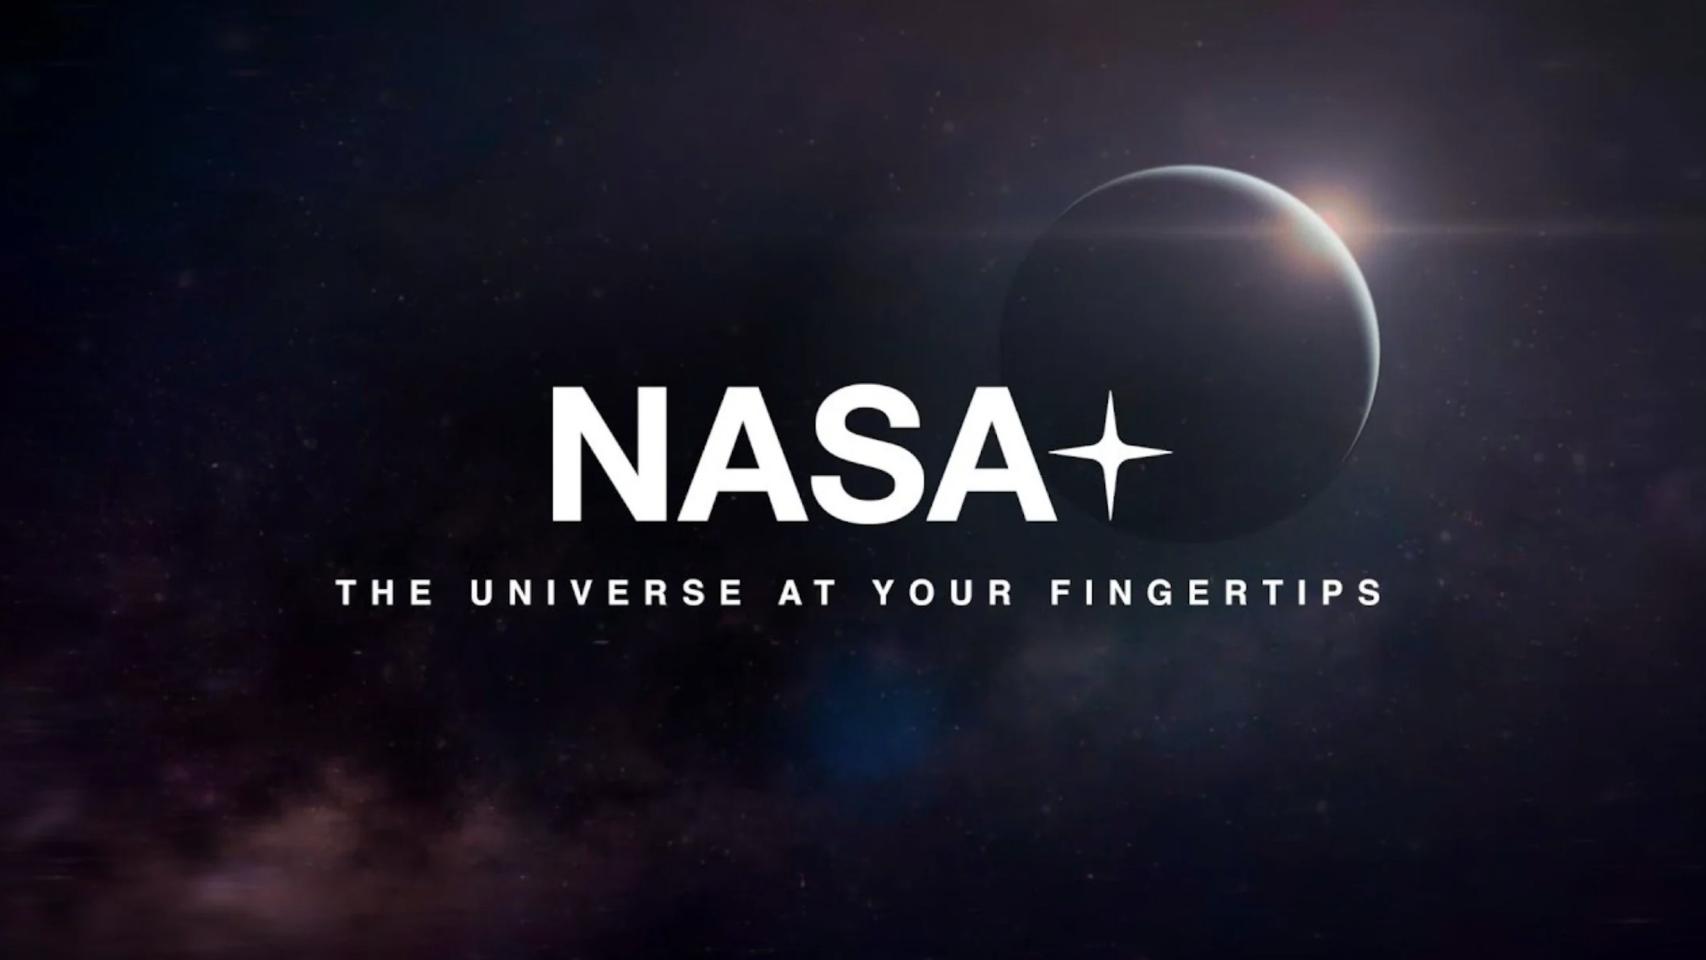 La NASA anuncia su propia plataforma de streaming